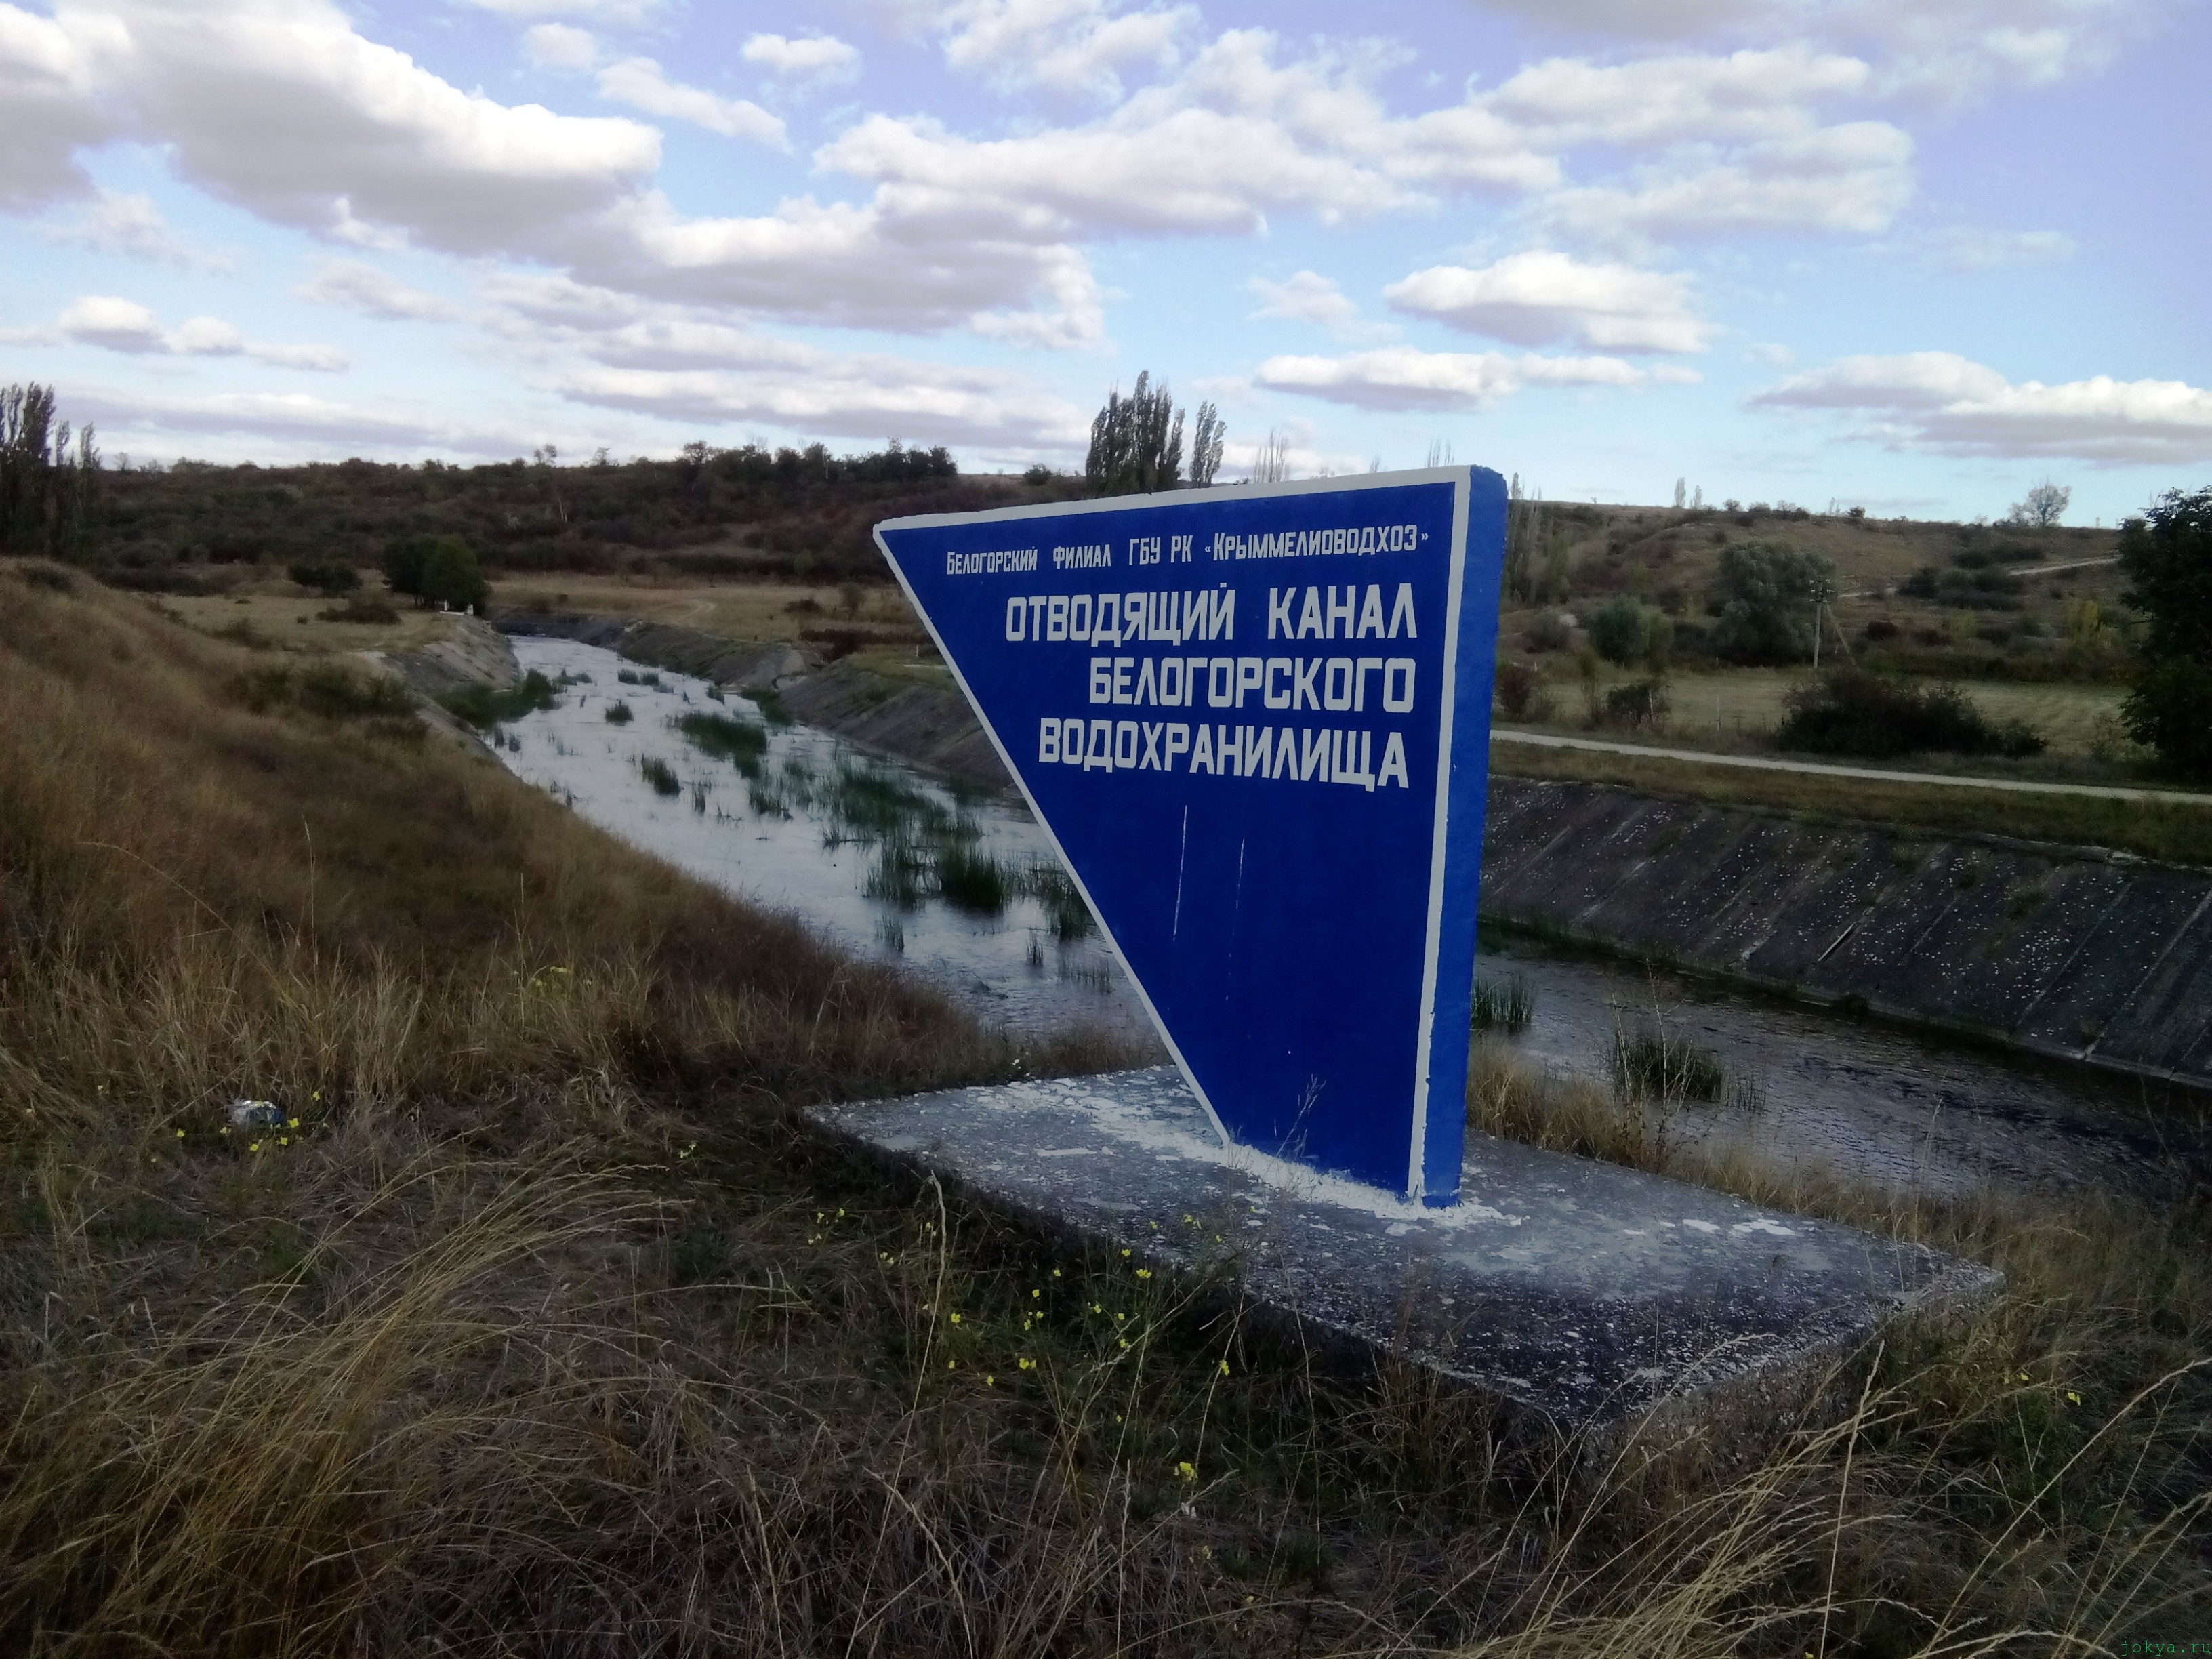 Отводящий канал вдхр в городе Белогорске фото заметка о Крыме jokya.ru 